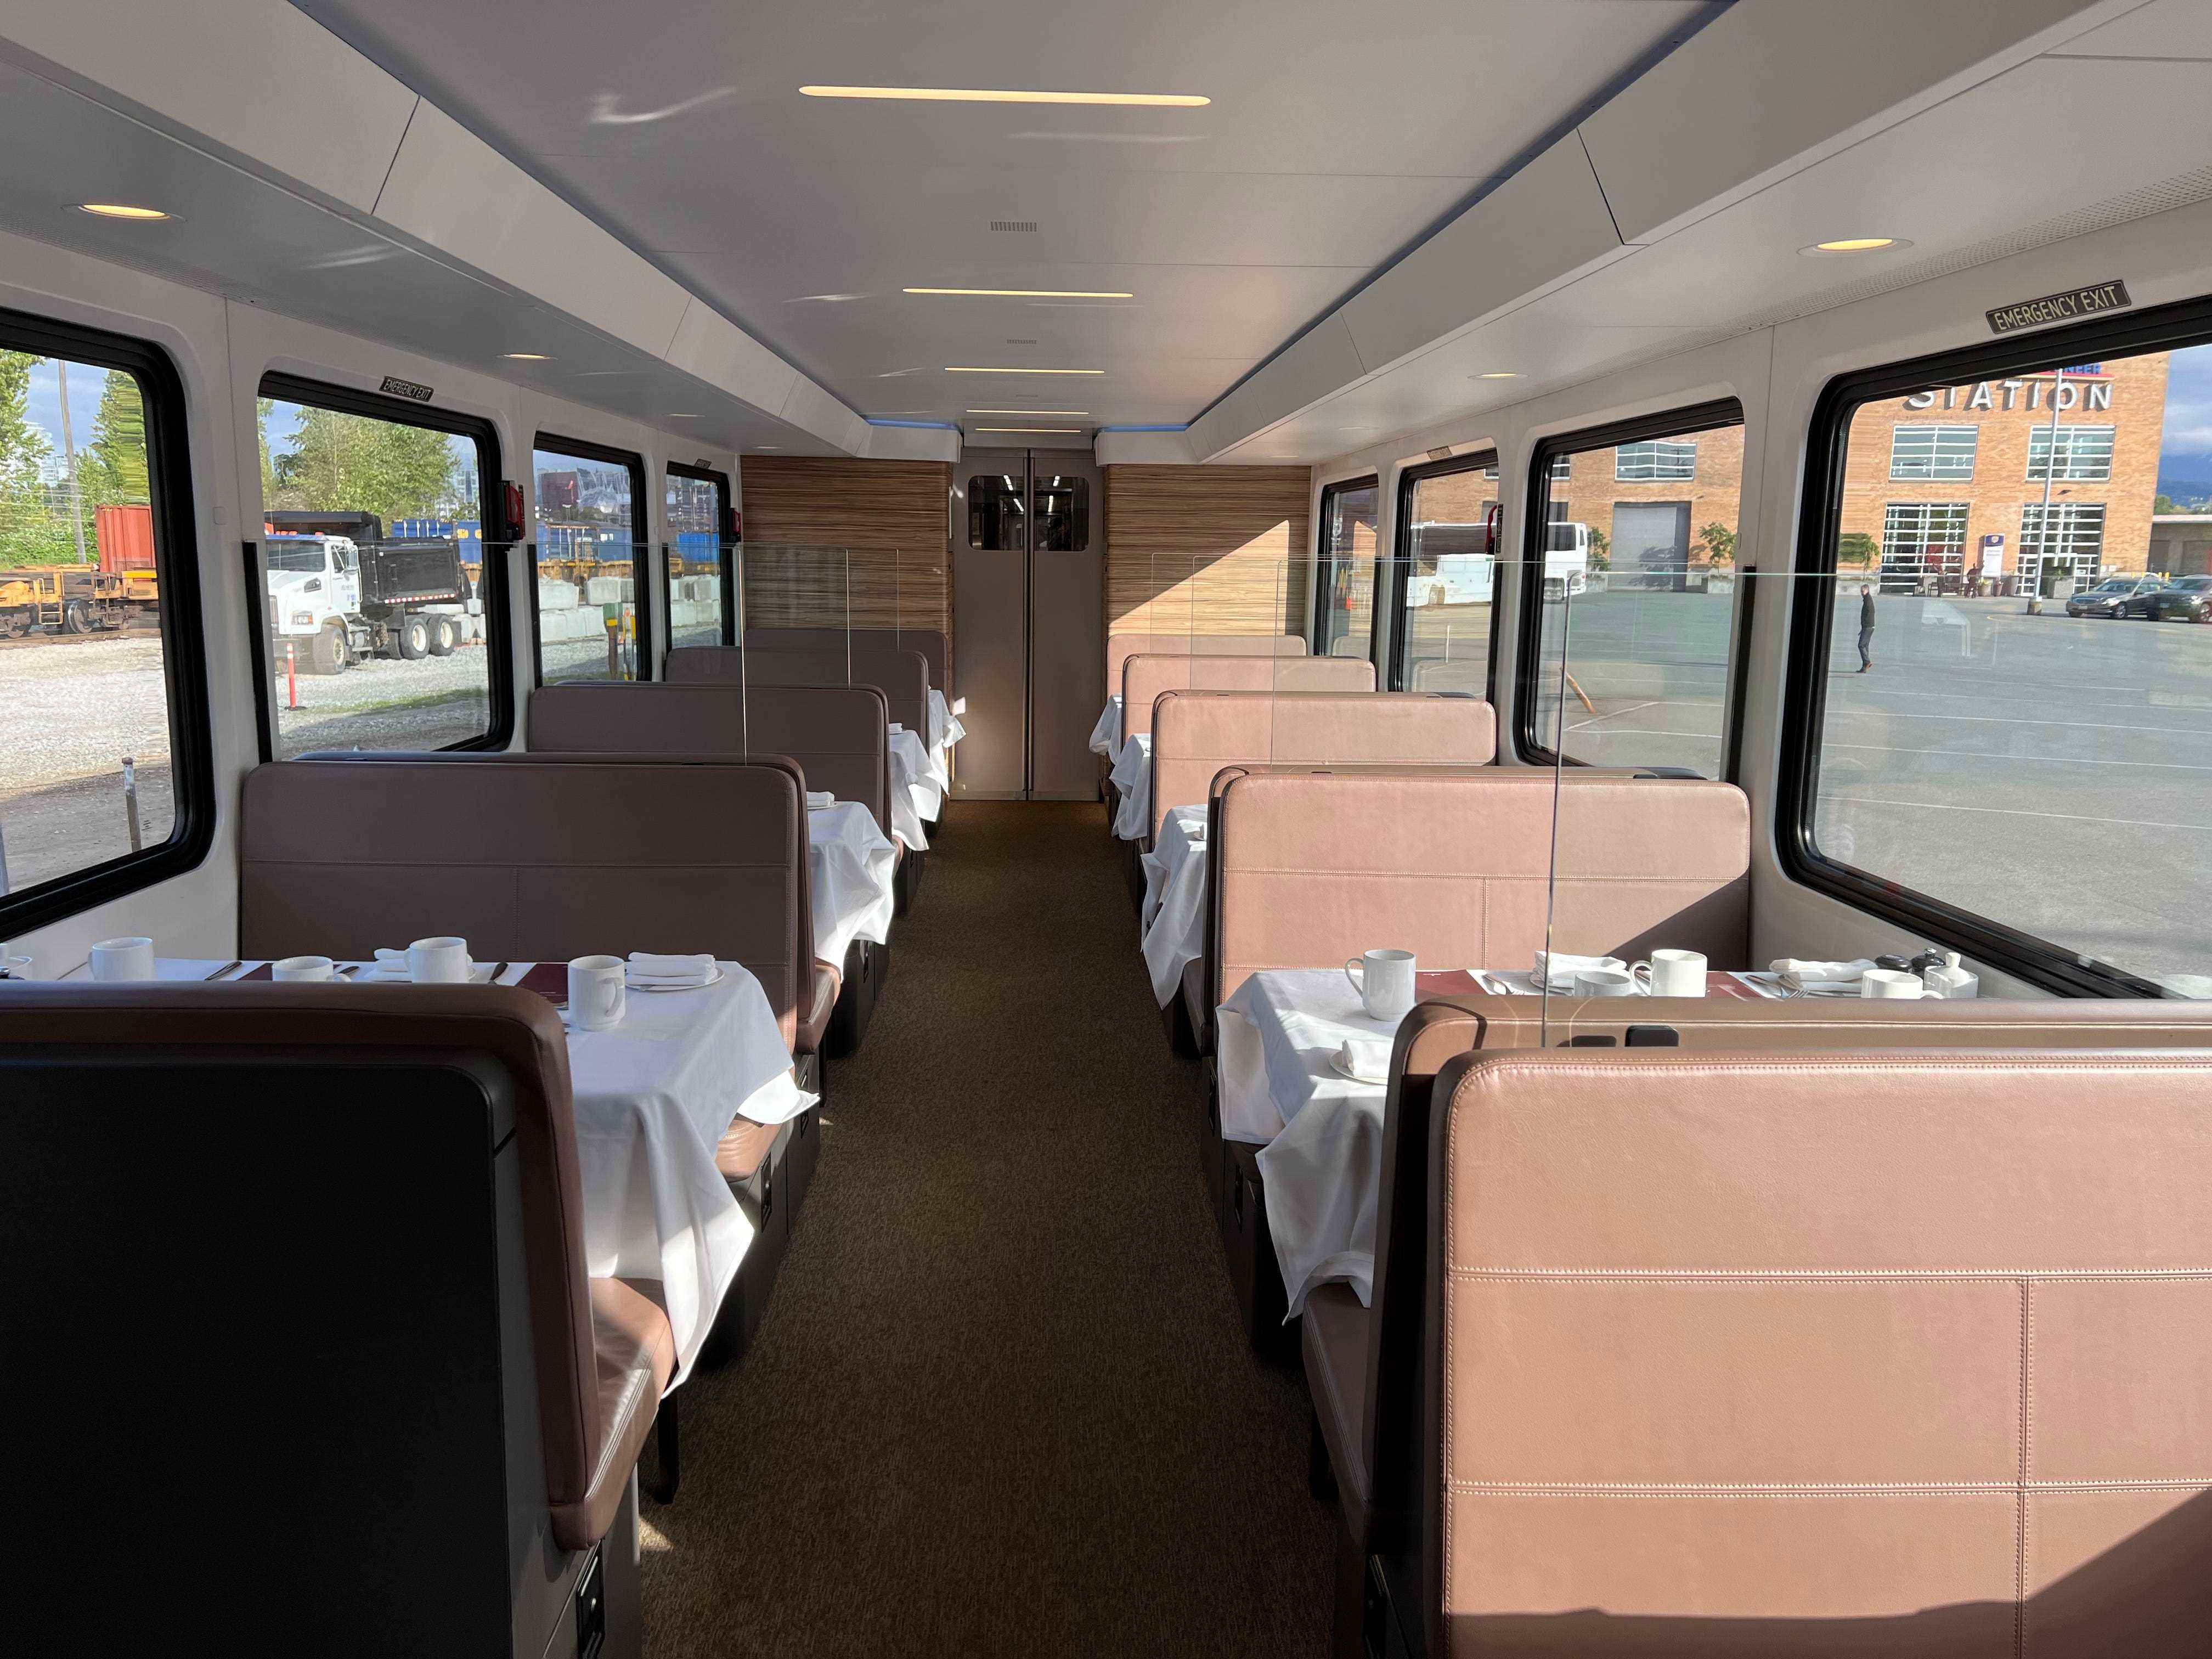 Speisewagen im Zug, mit braunen Sitzen und Tischen mit weißen Tischdecken